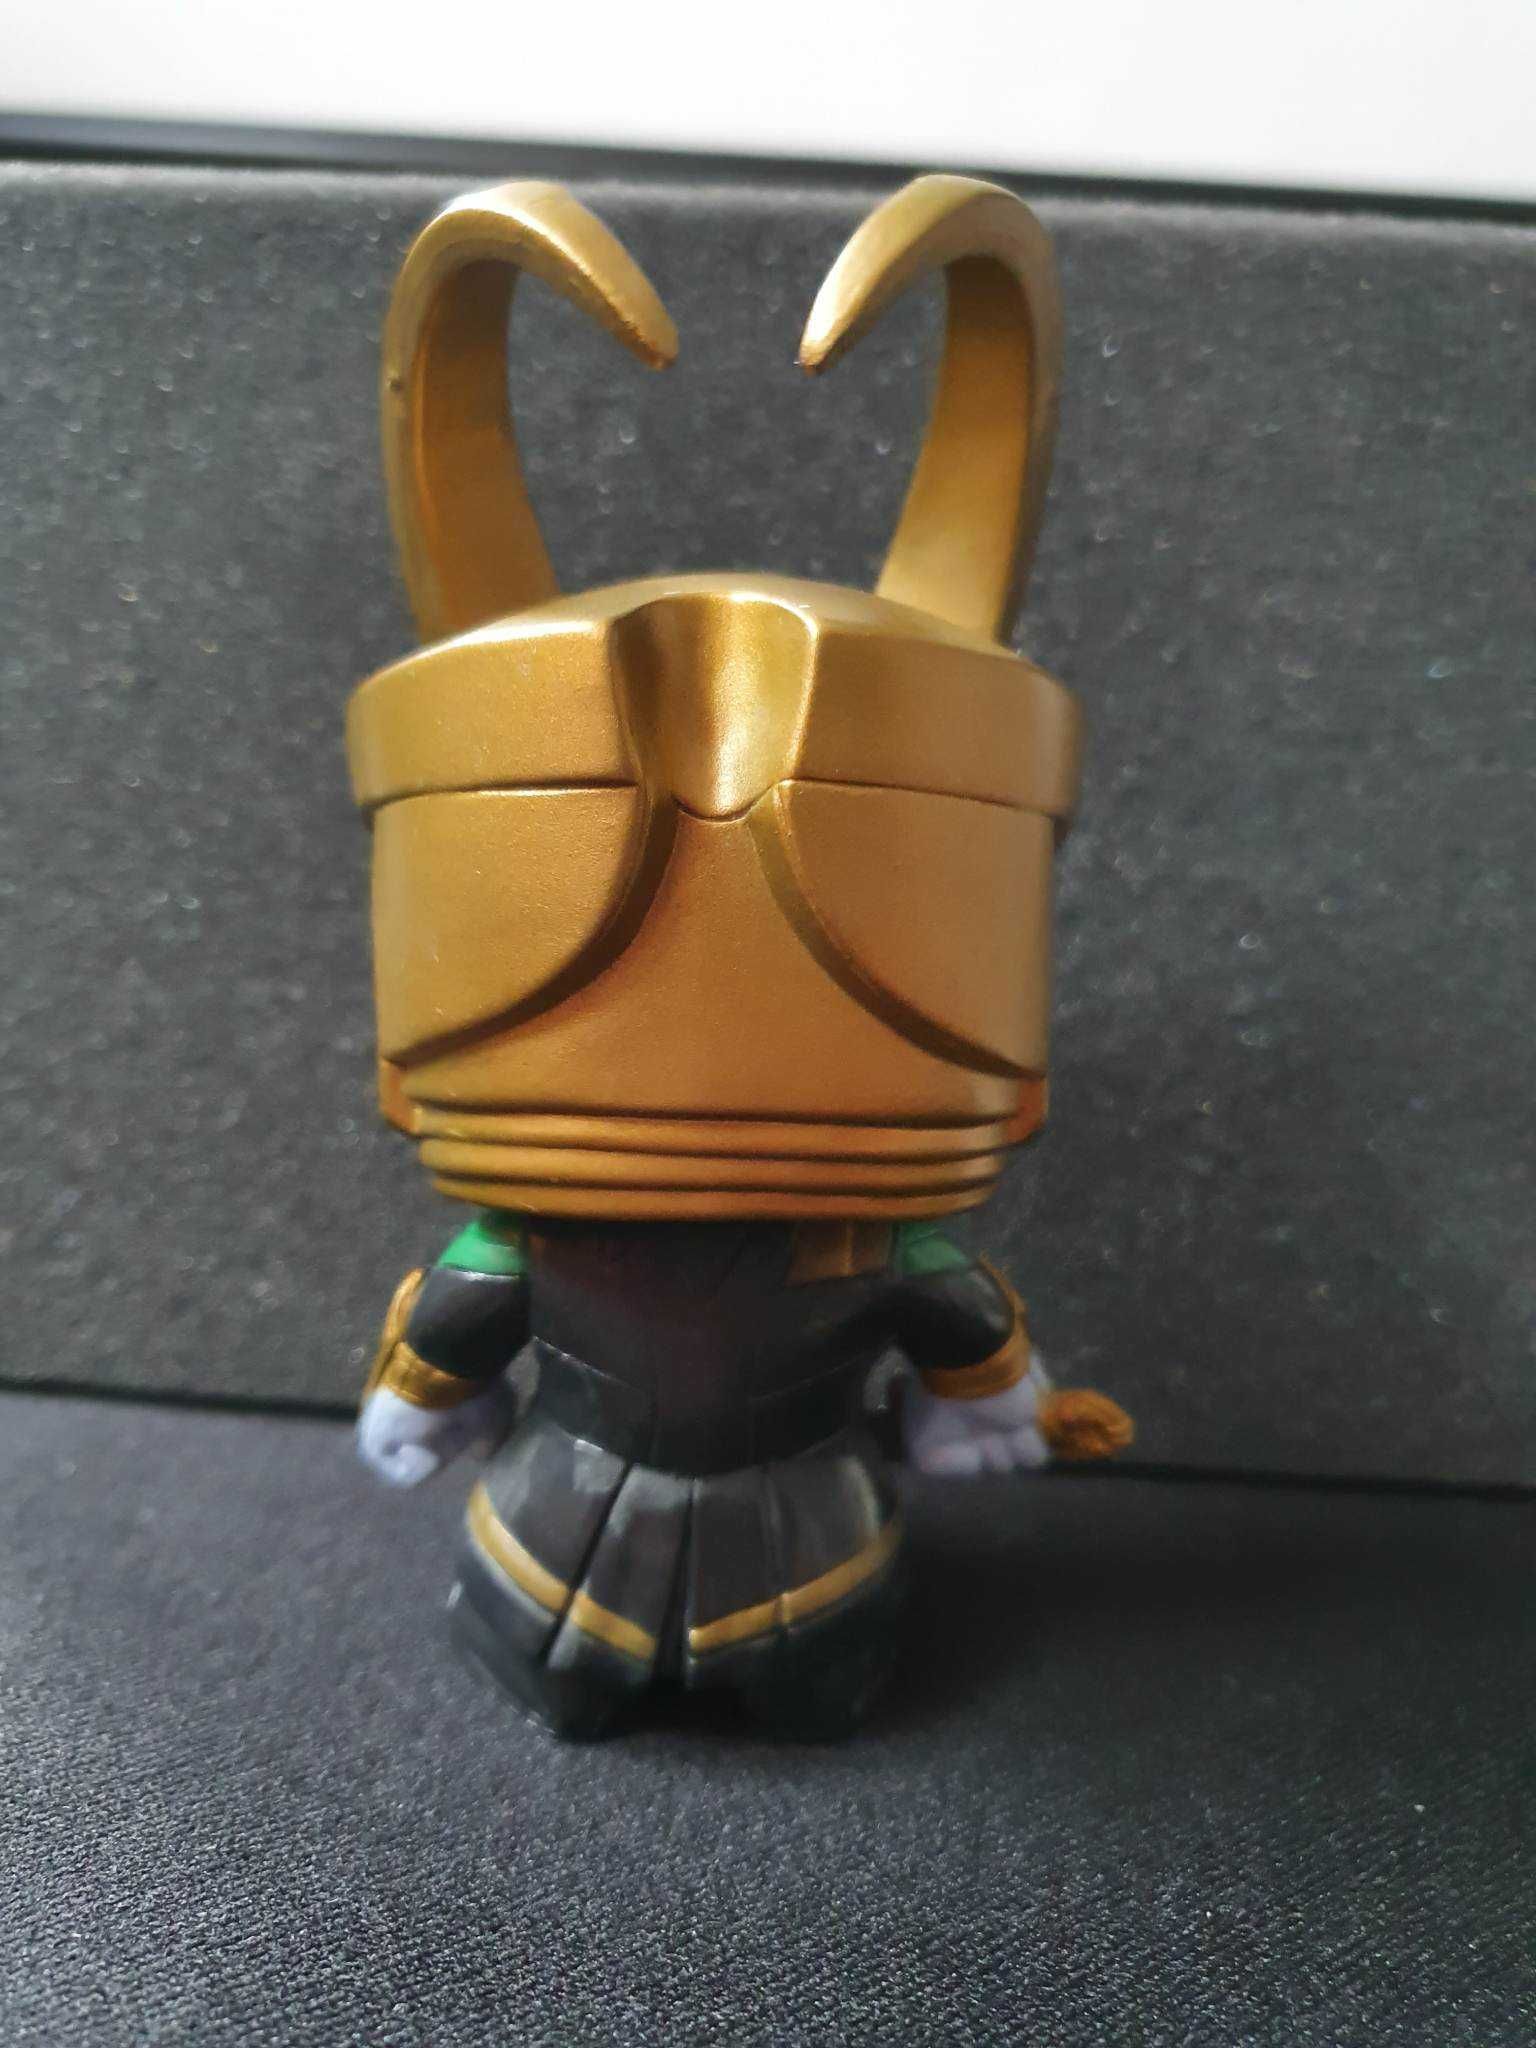 Funko Pop - Bobble Head - Frost Giant Loki